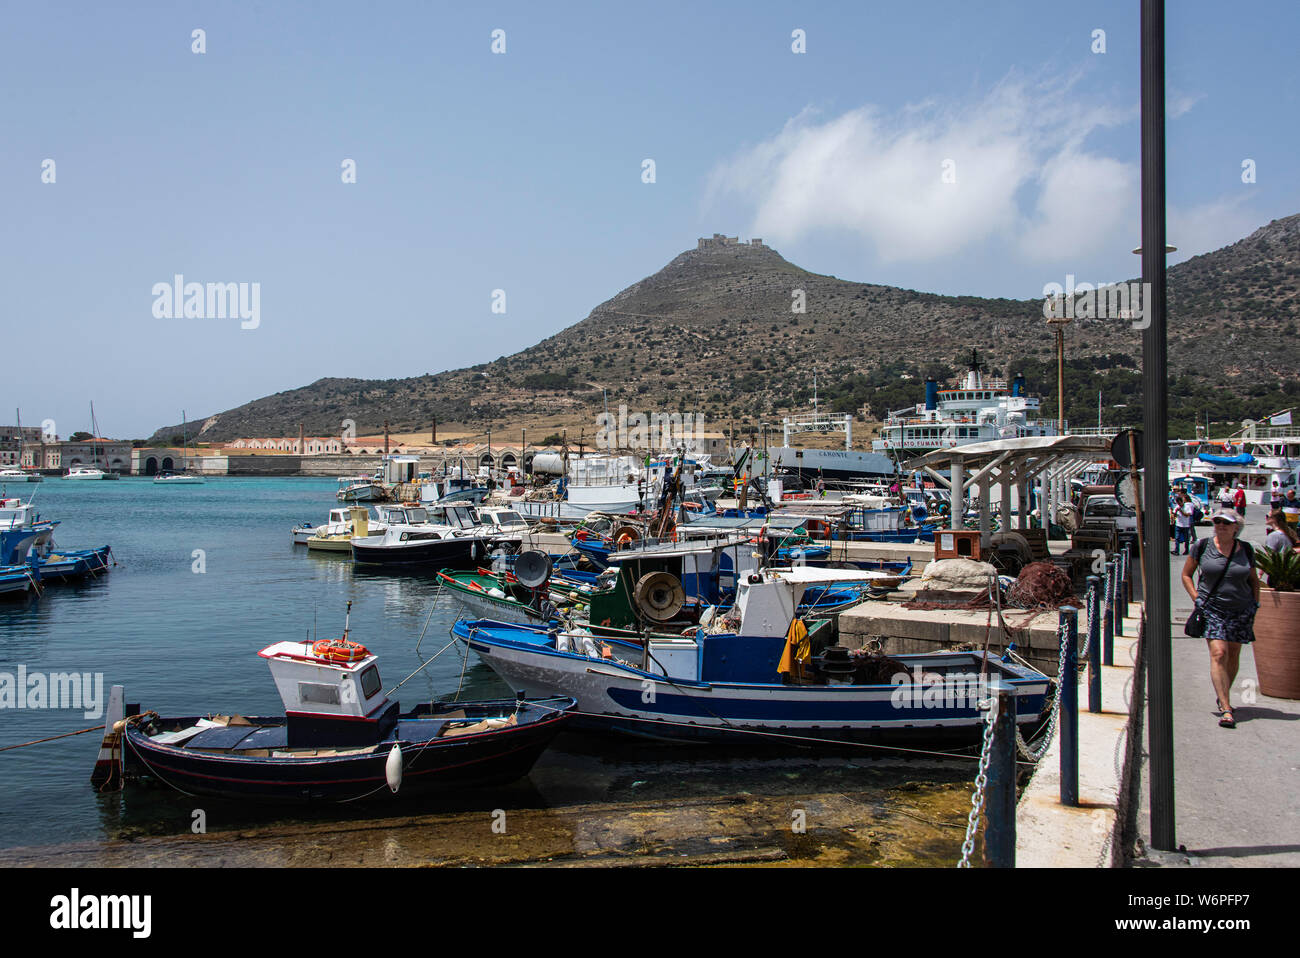 Marina at Favignana Island, Sicily Stock Photo